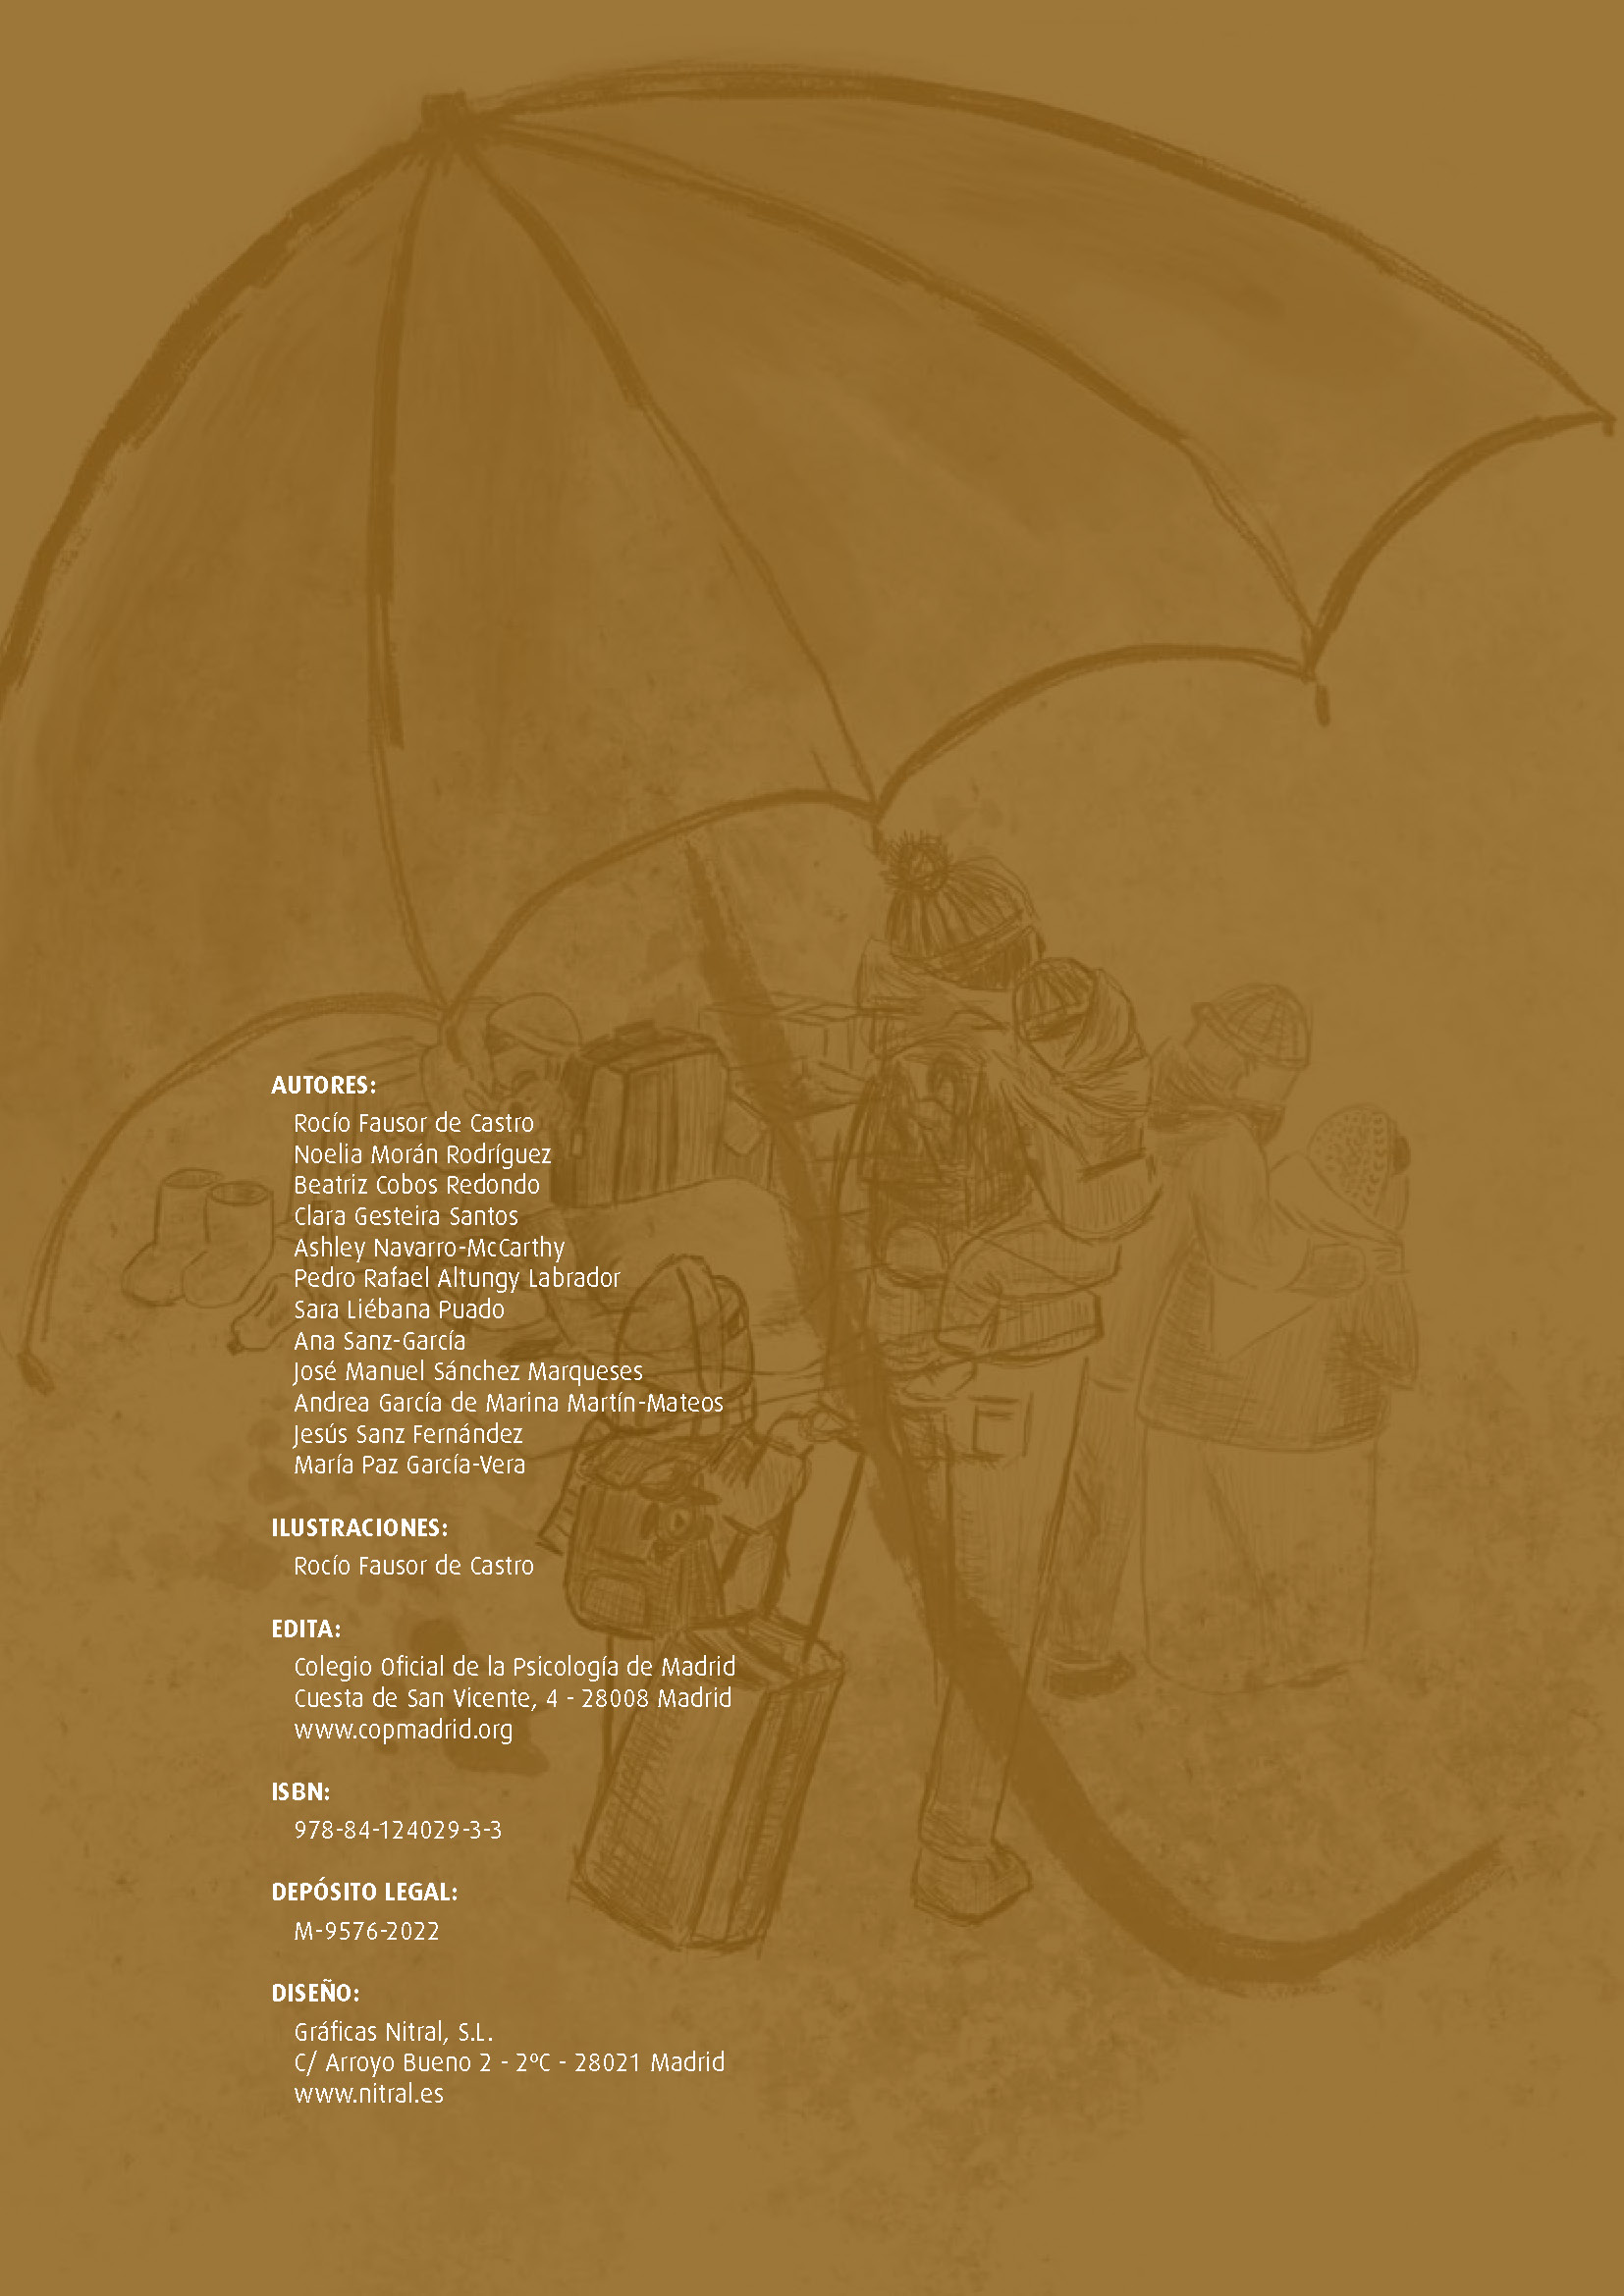 Nuestro equipo publica "Menores viviendo una guerra. Guía para crear un paraguas de protección psicológica" con motivo de la guerra en Ucrania y ante la grave crisis humanitaria generada - 2